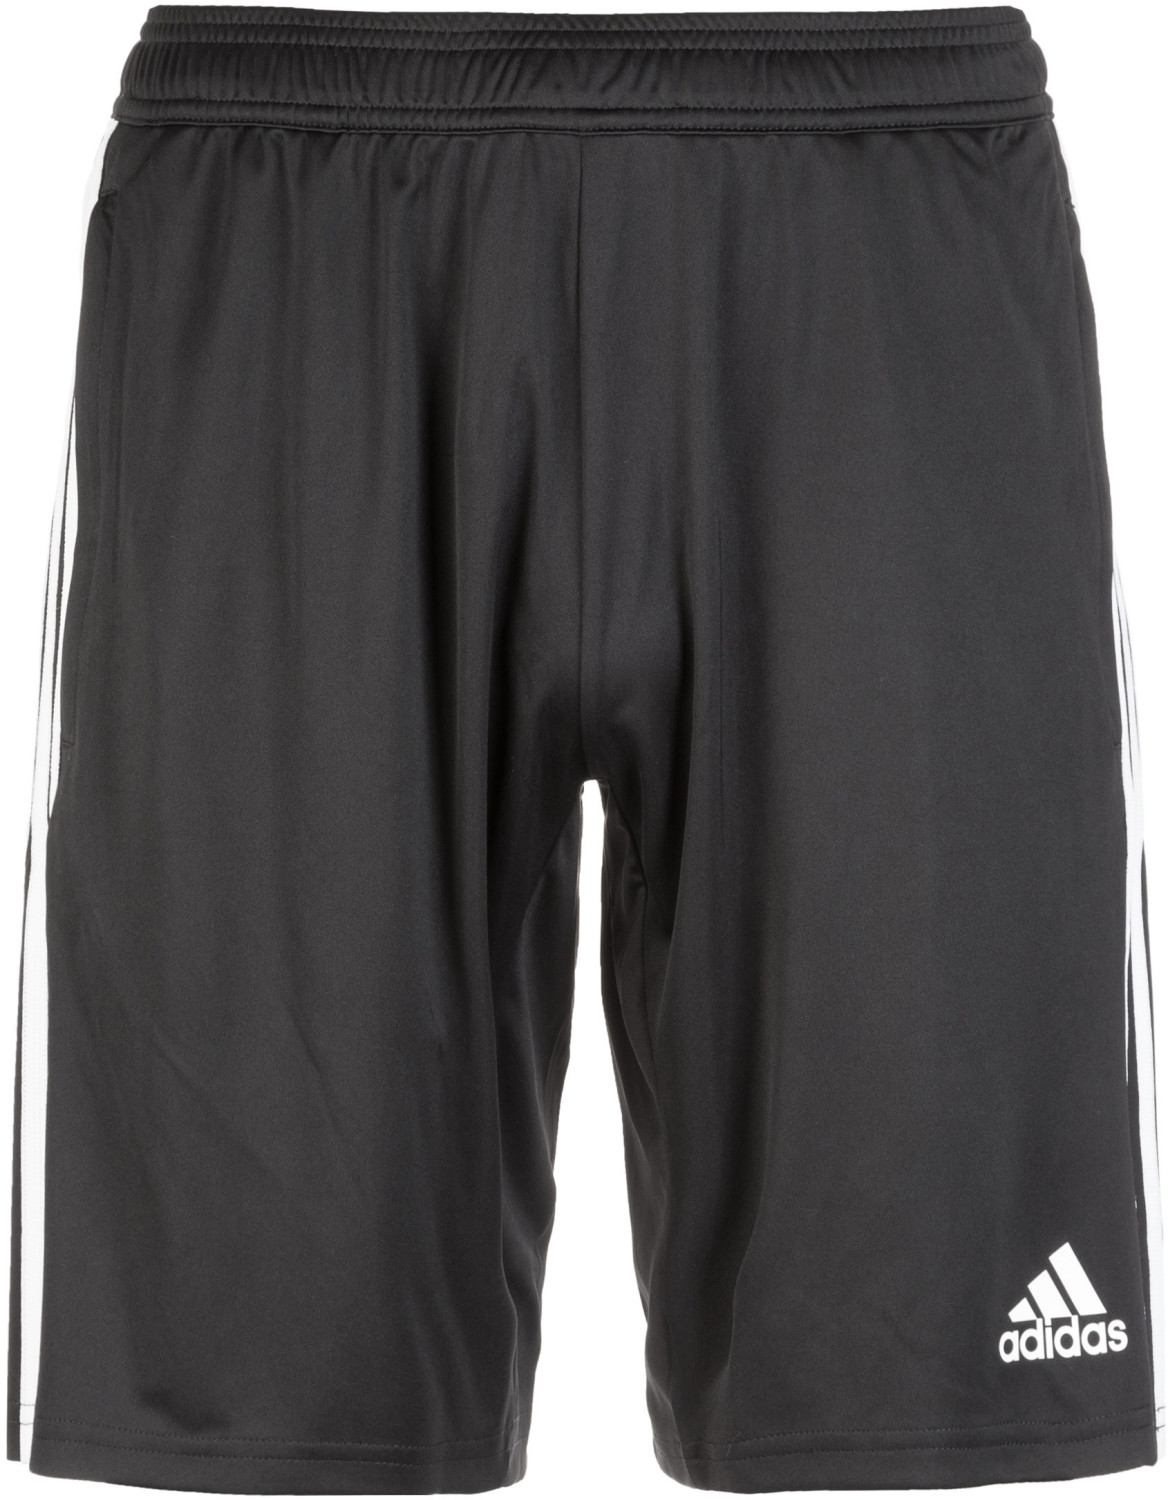 Adidas Tiro 19 Shorts